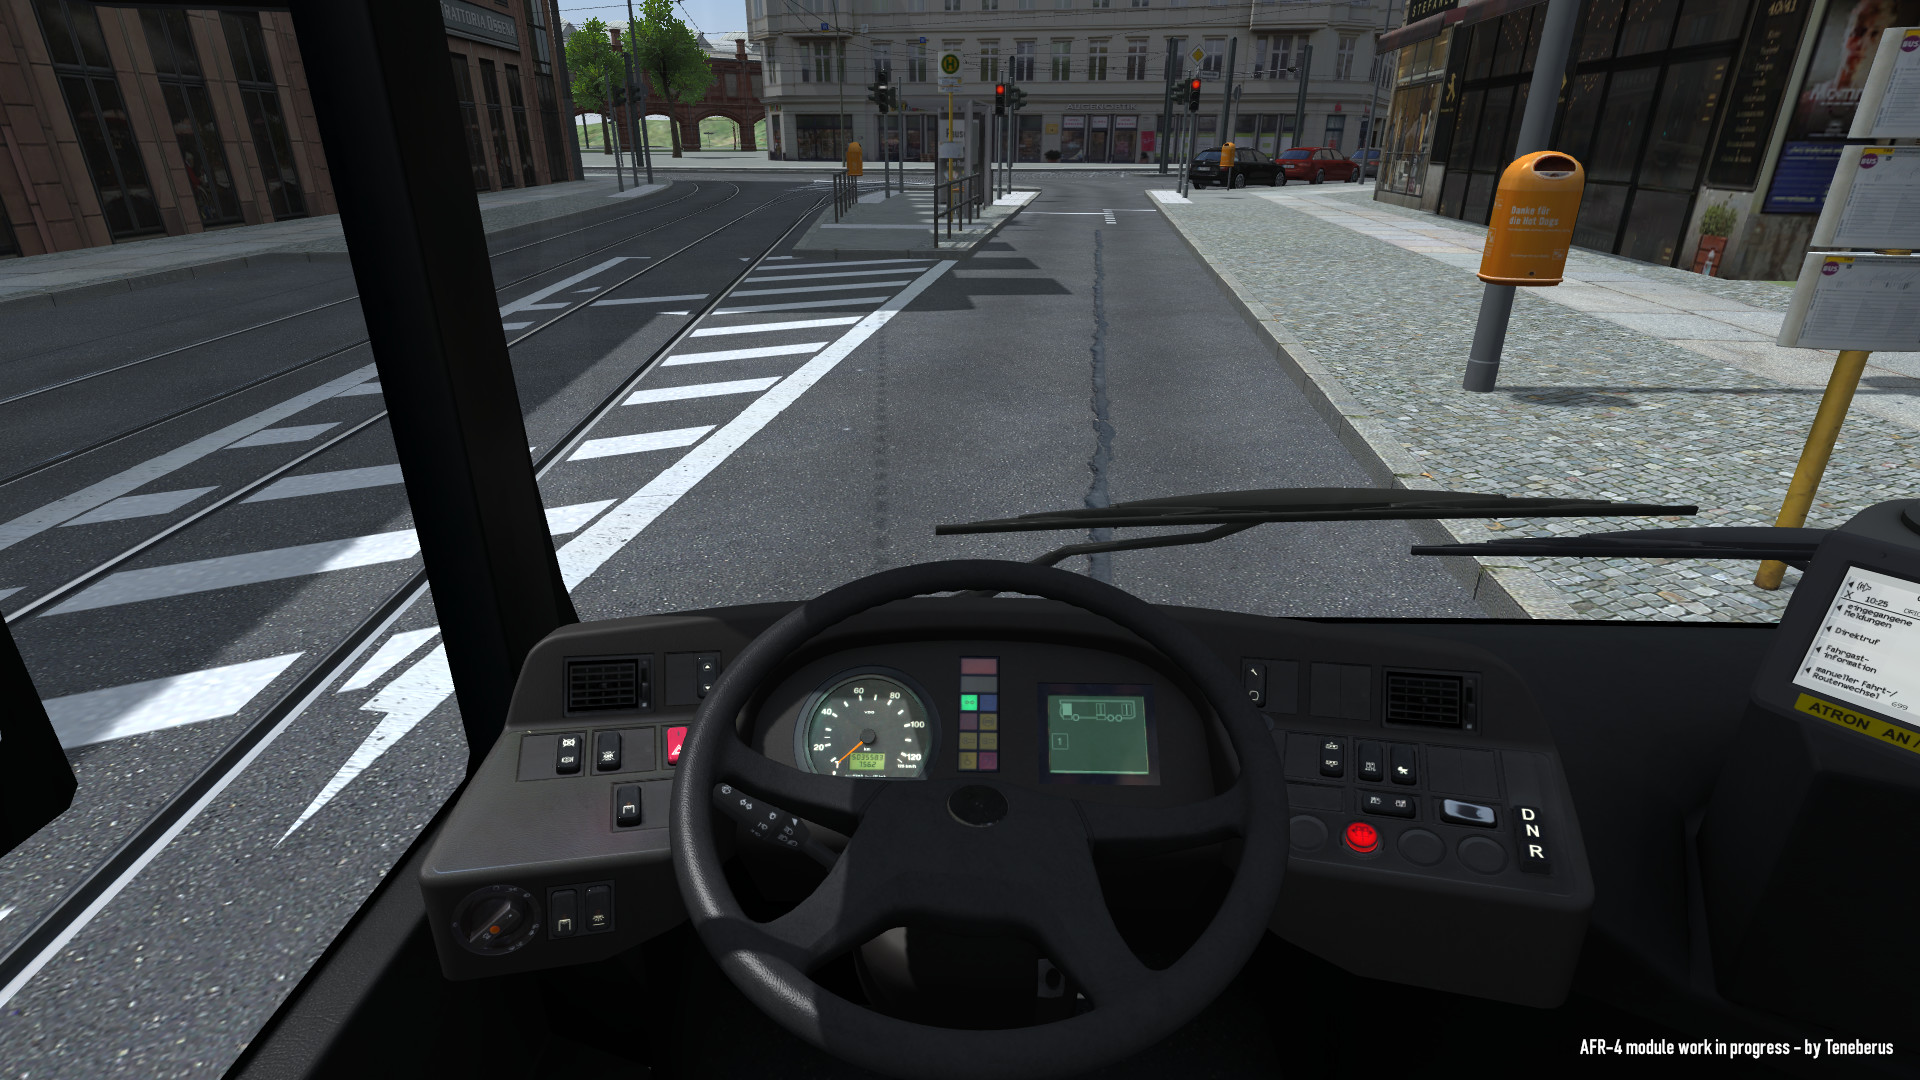 LOTUS-Simulator screenshot